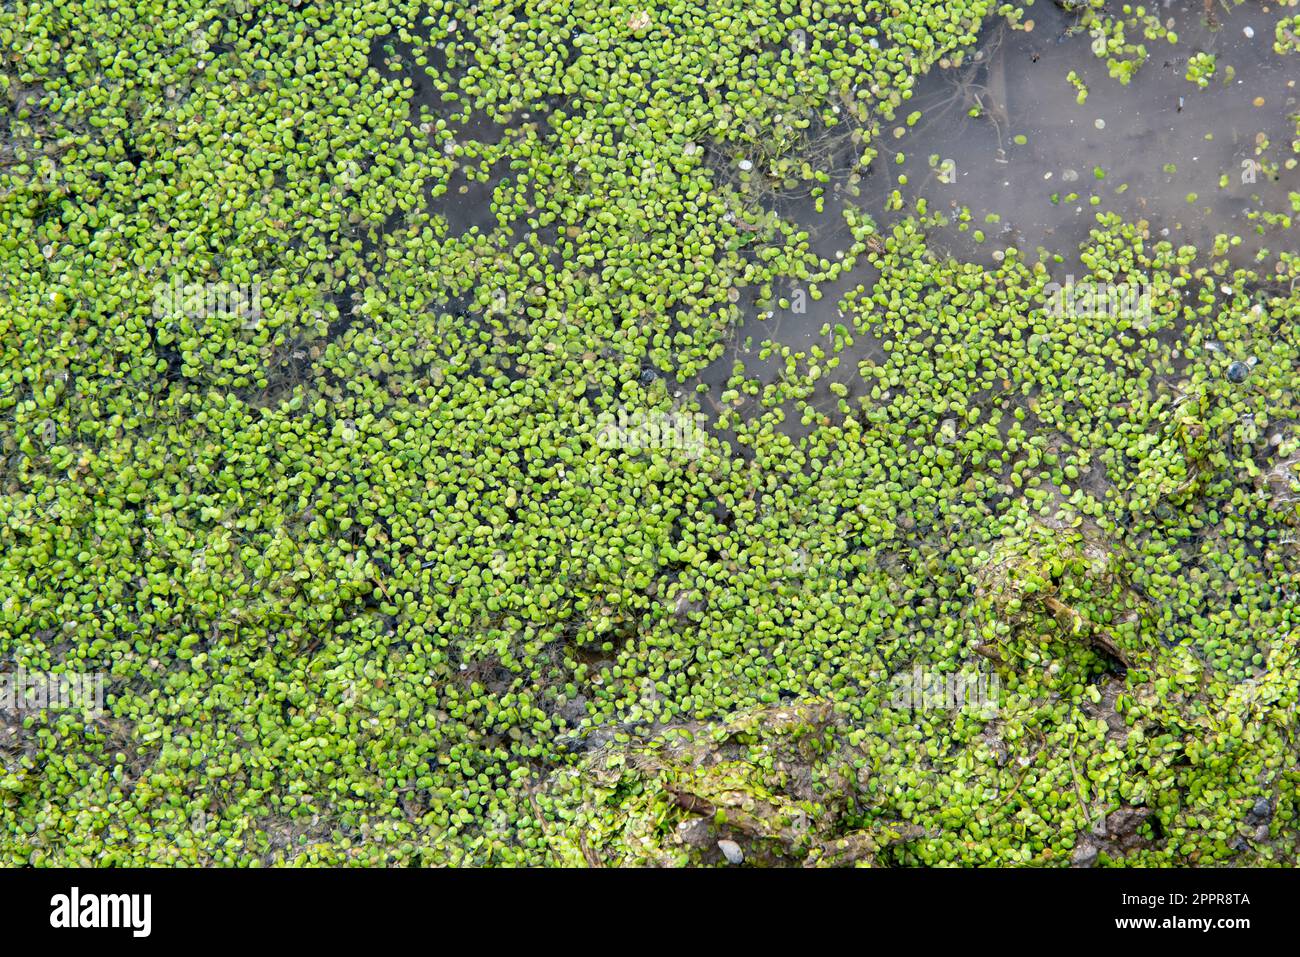 Lentejas verdes de agua, lemna, flotando en una charca, textura Stock Photo